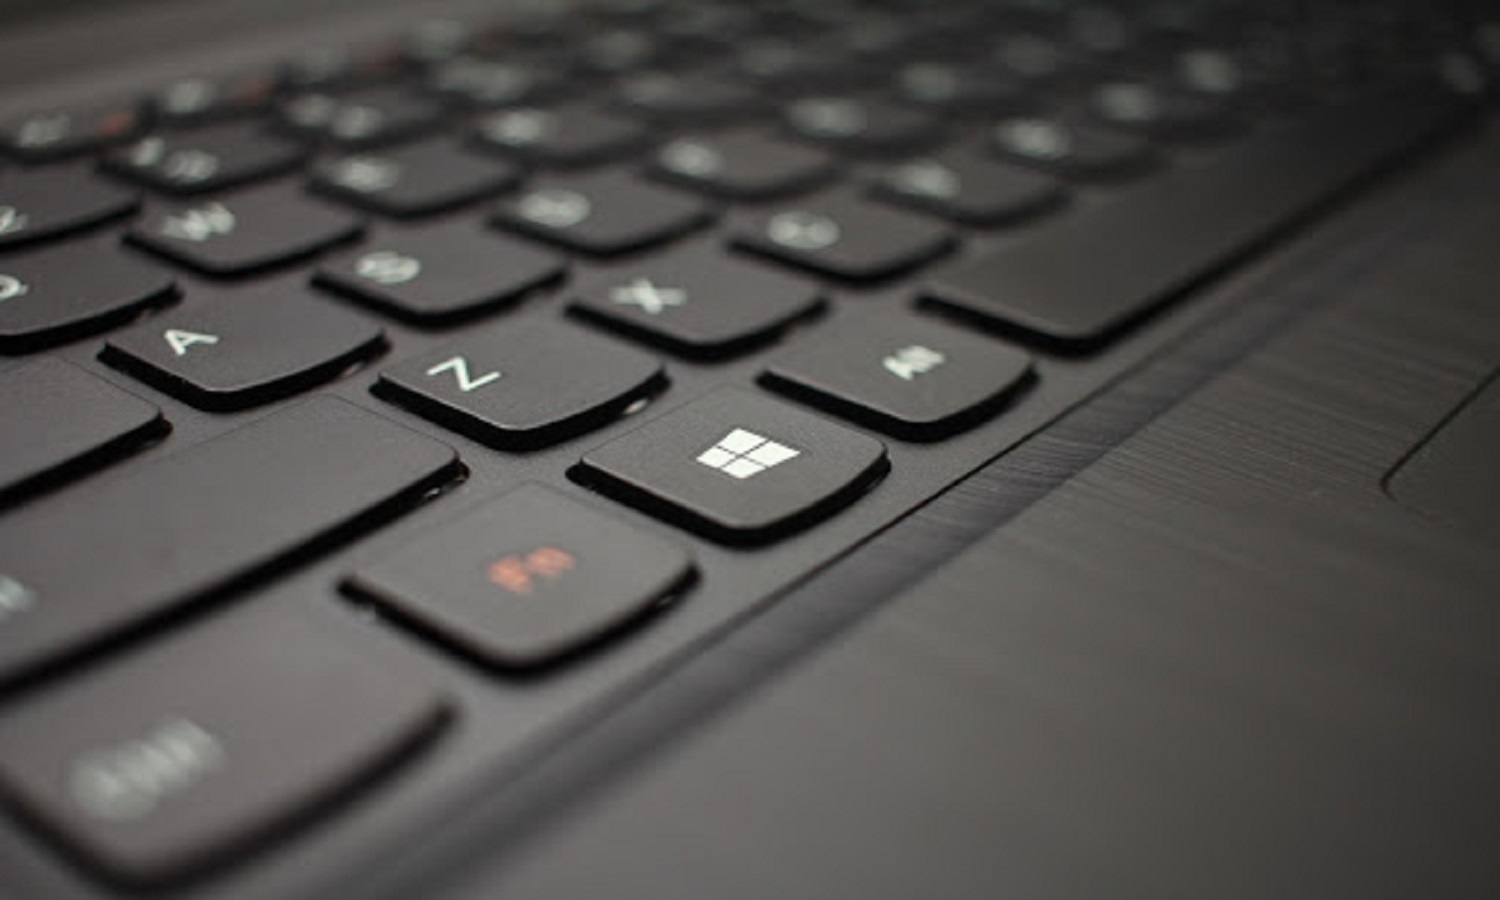 remap laptop keyboard windows 10